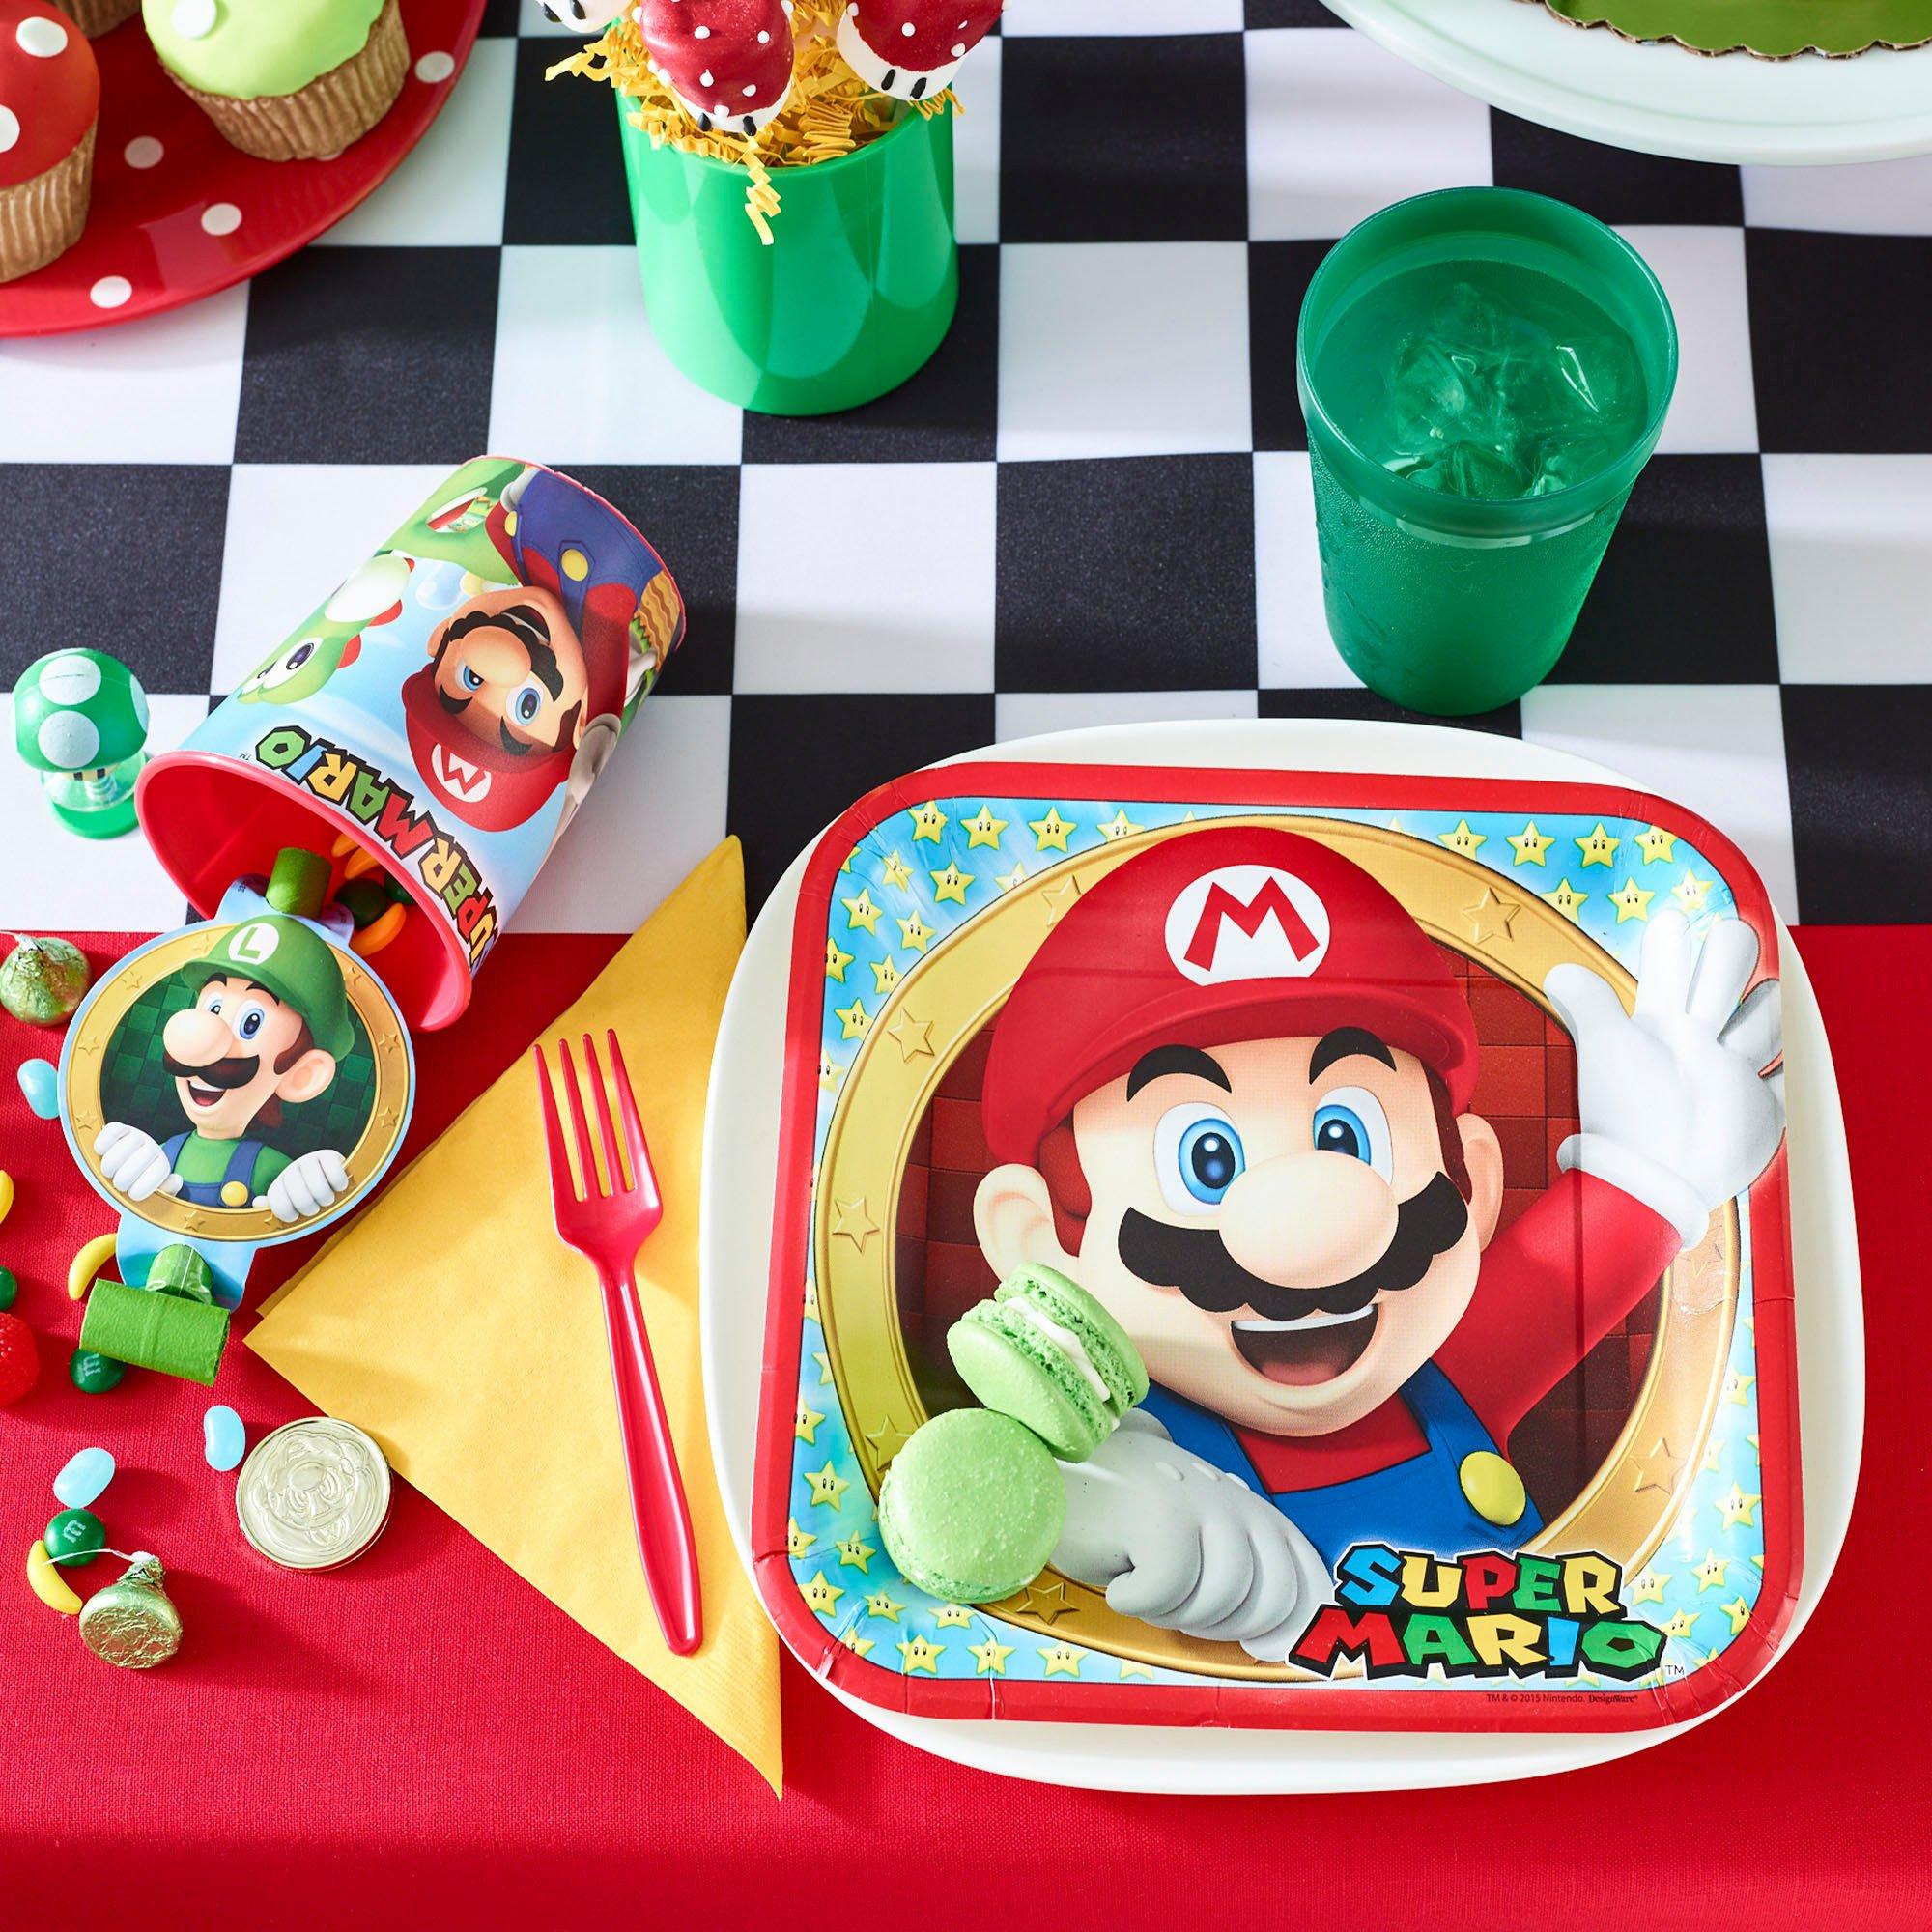 Super Mario Birthday Party